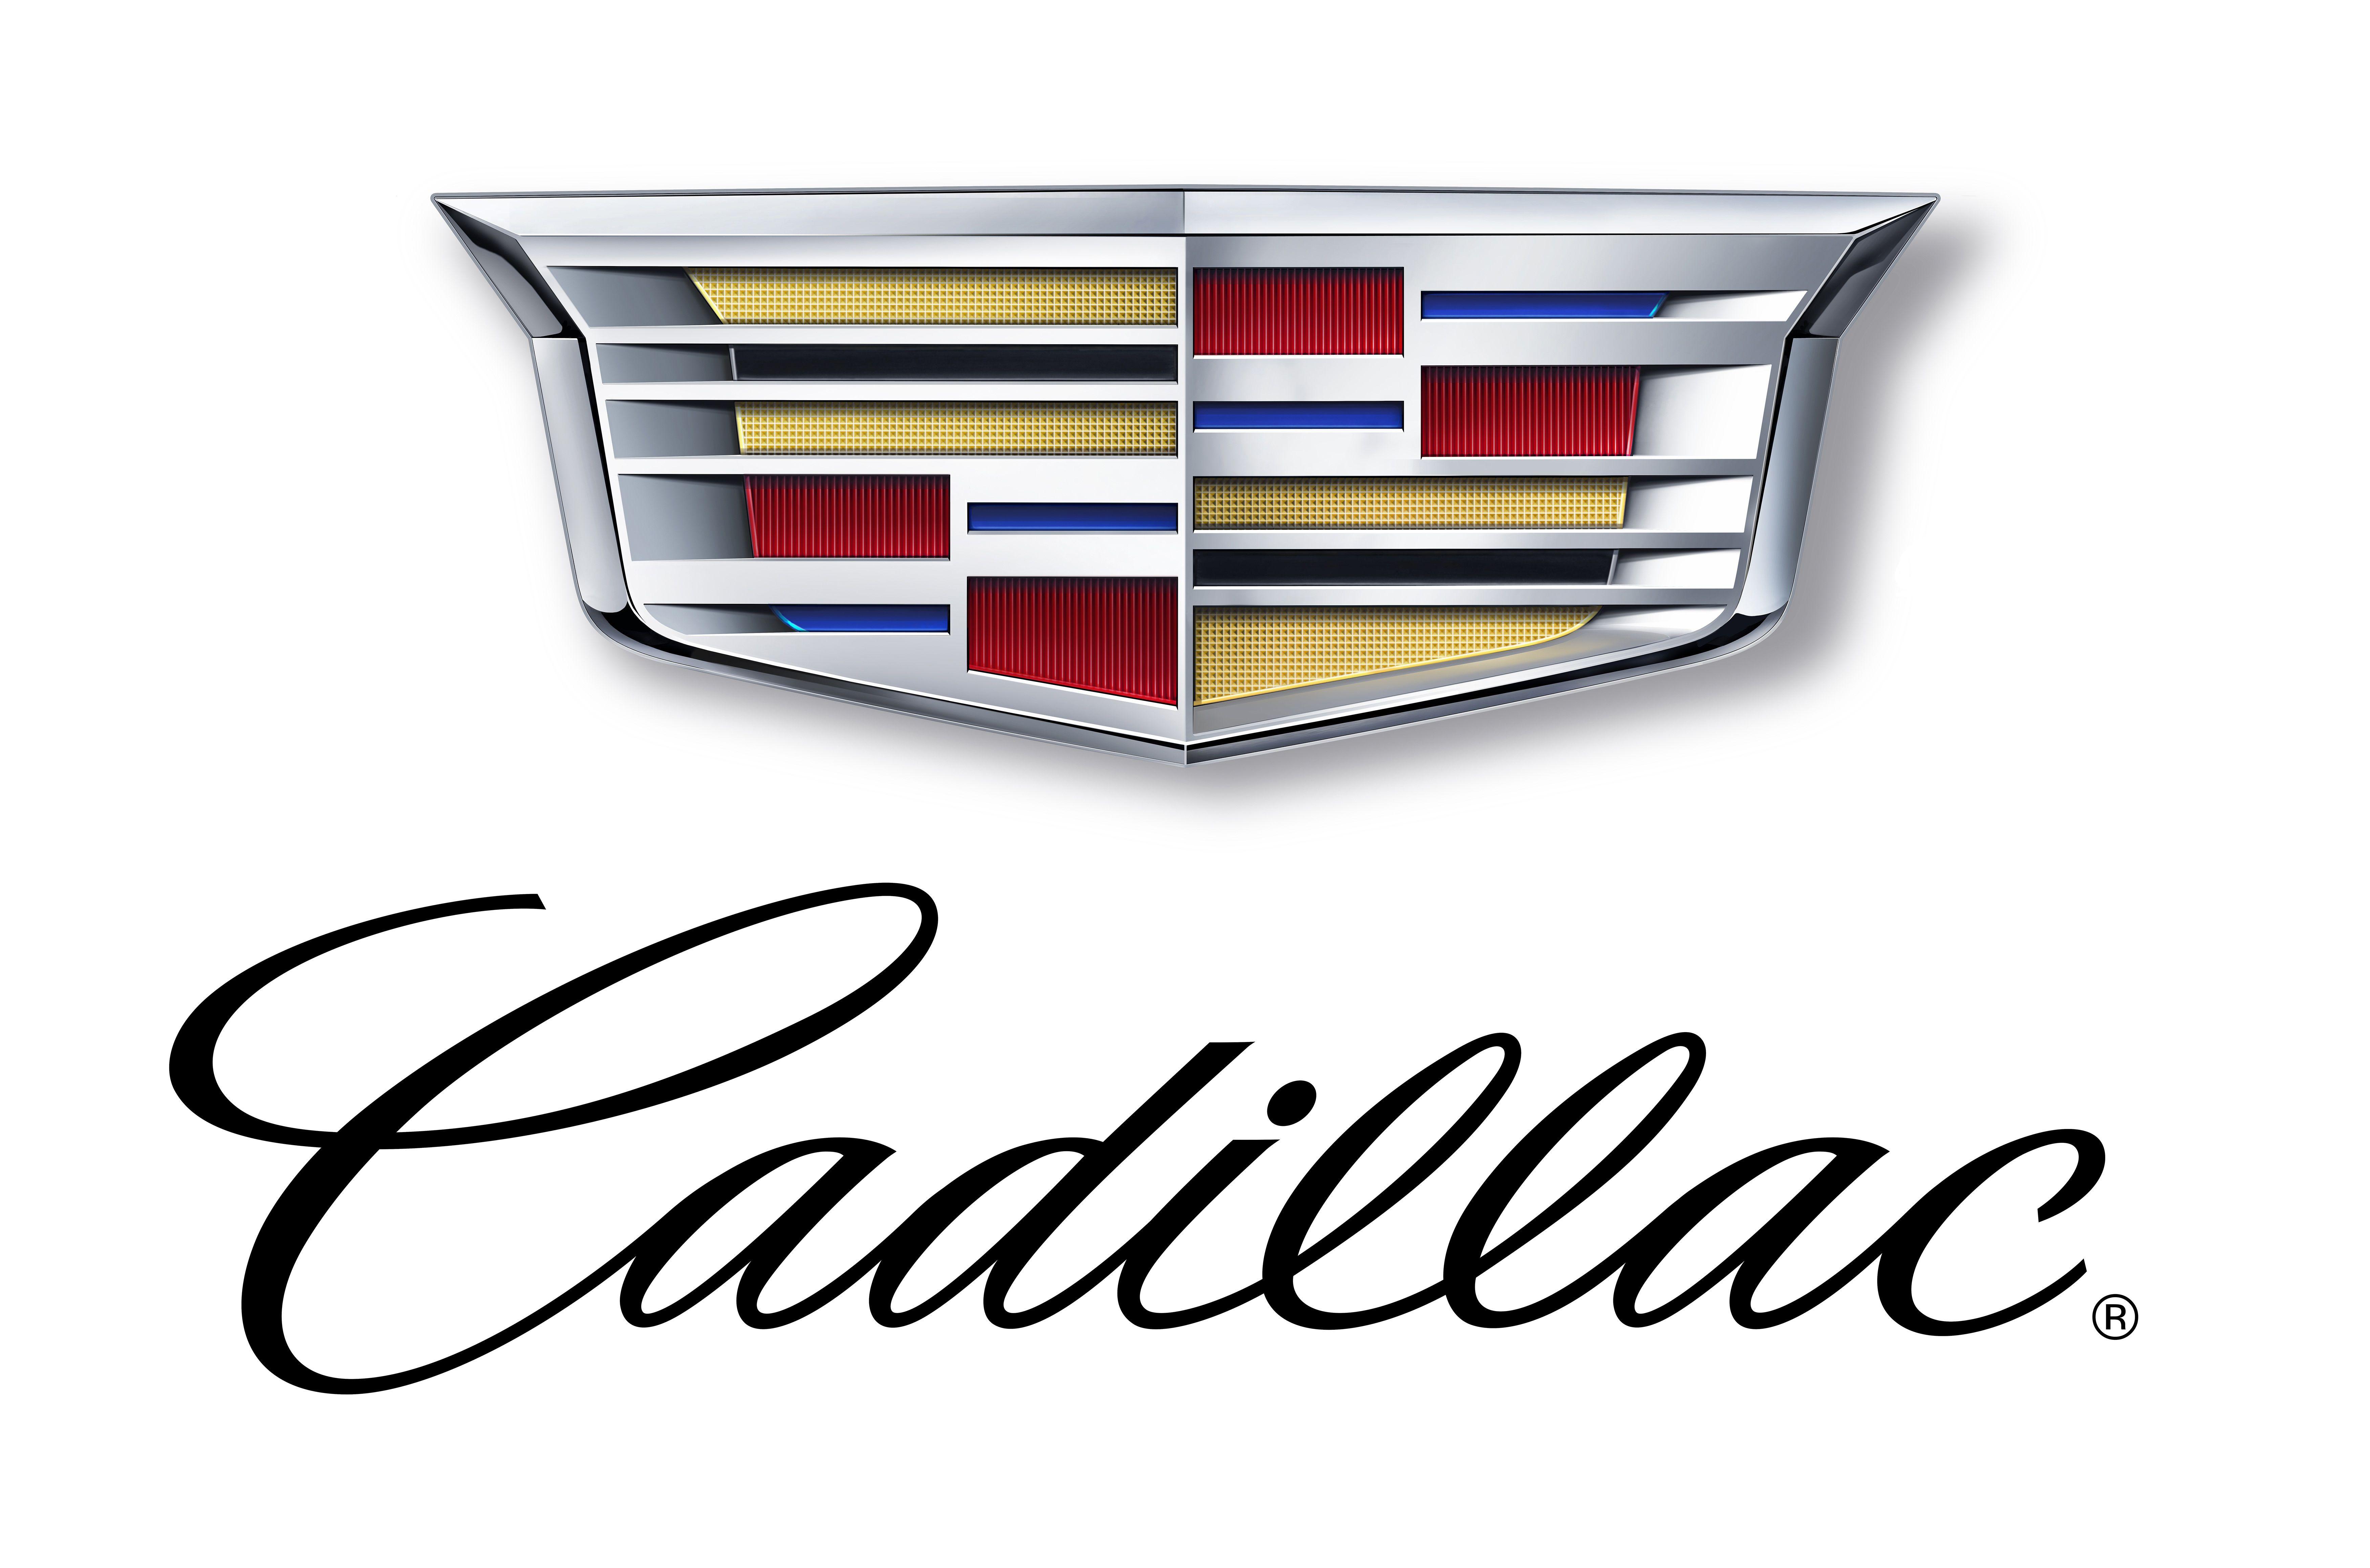 2014 Cadillac Logo - Upcoming Top-End Product Named Cadillac CT6